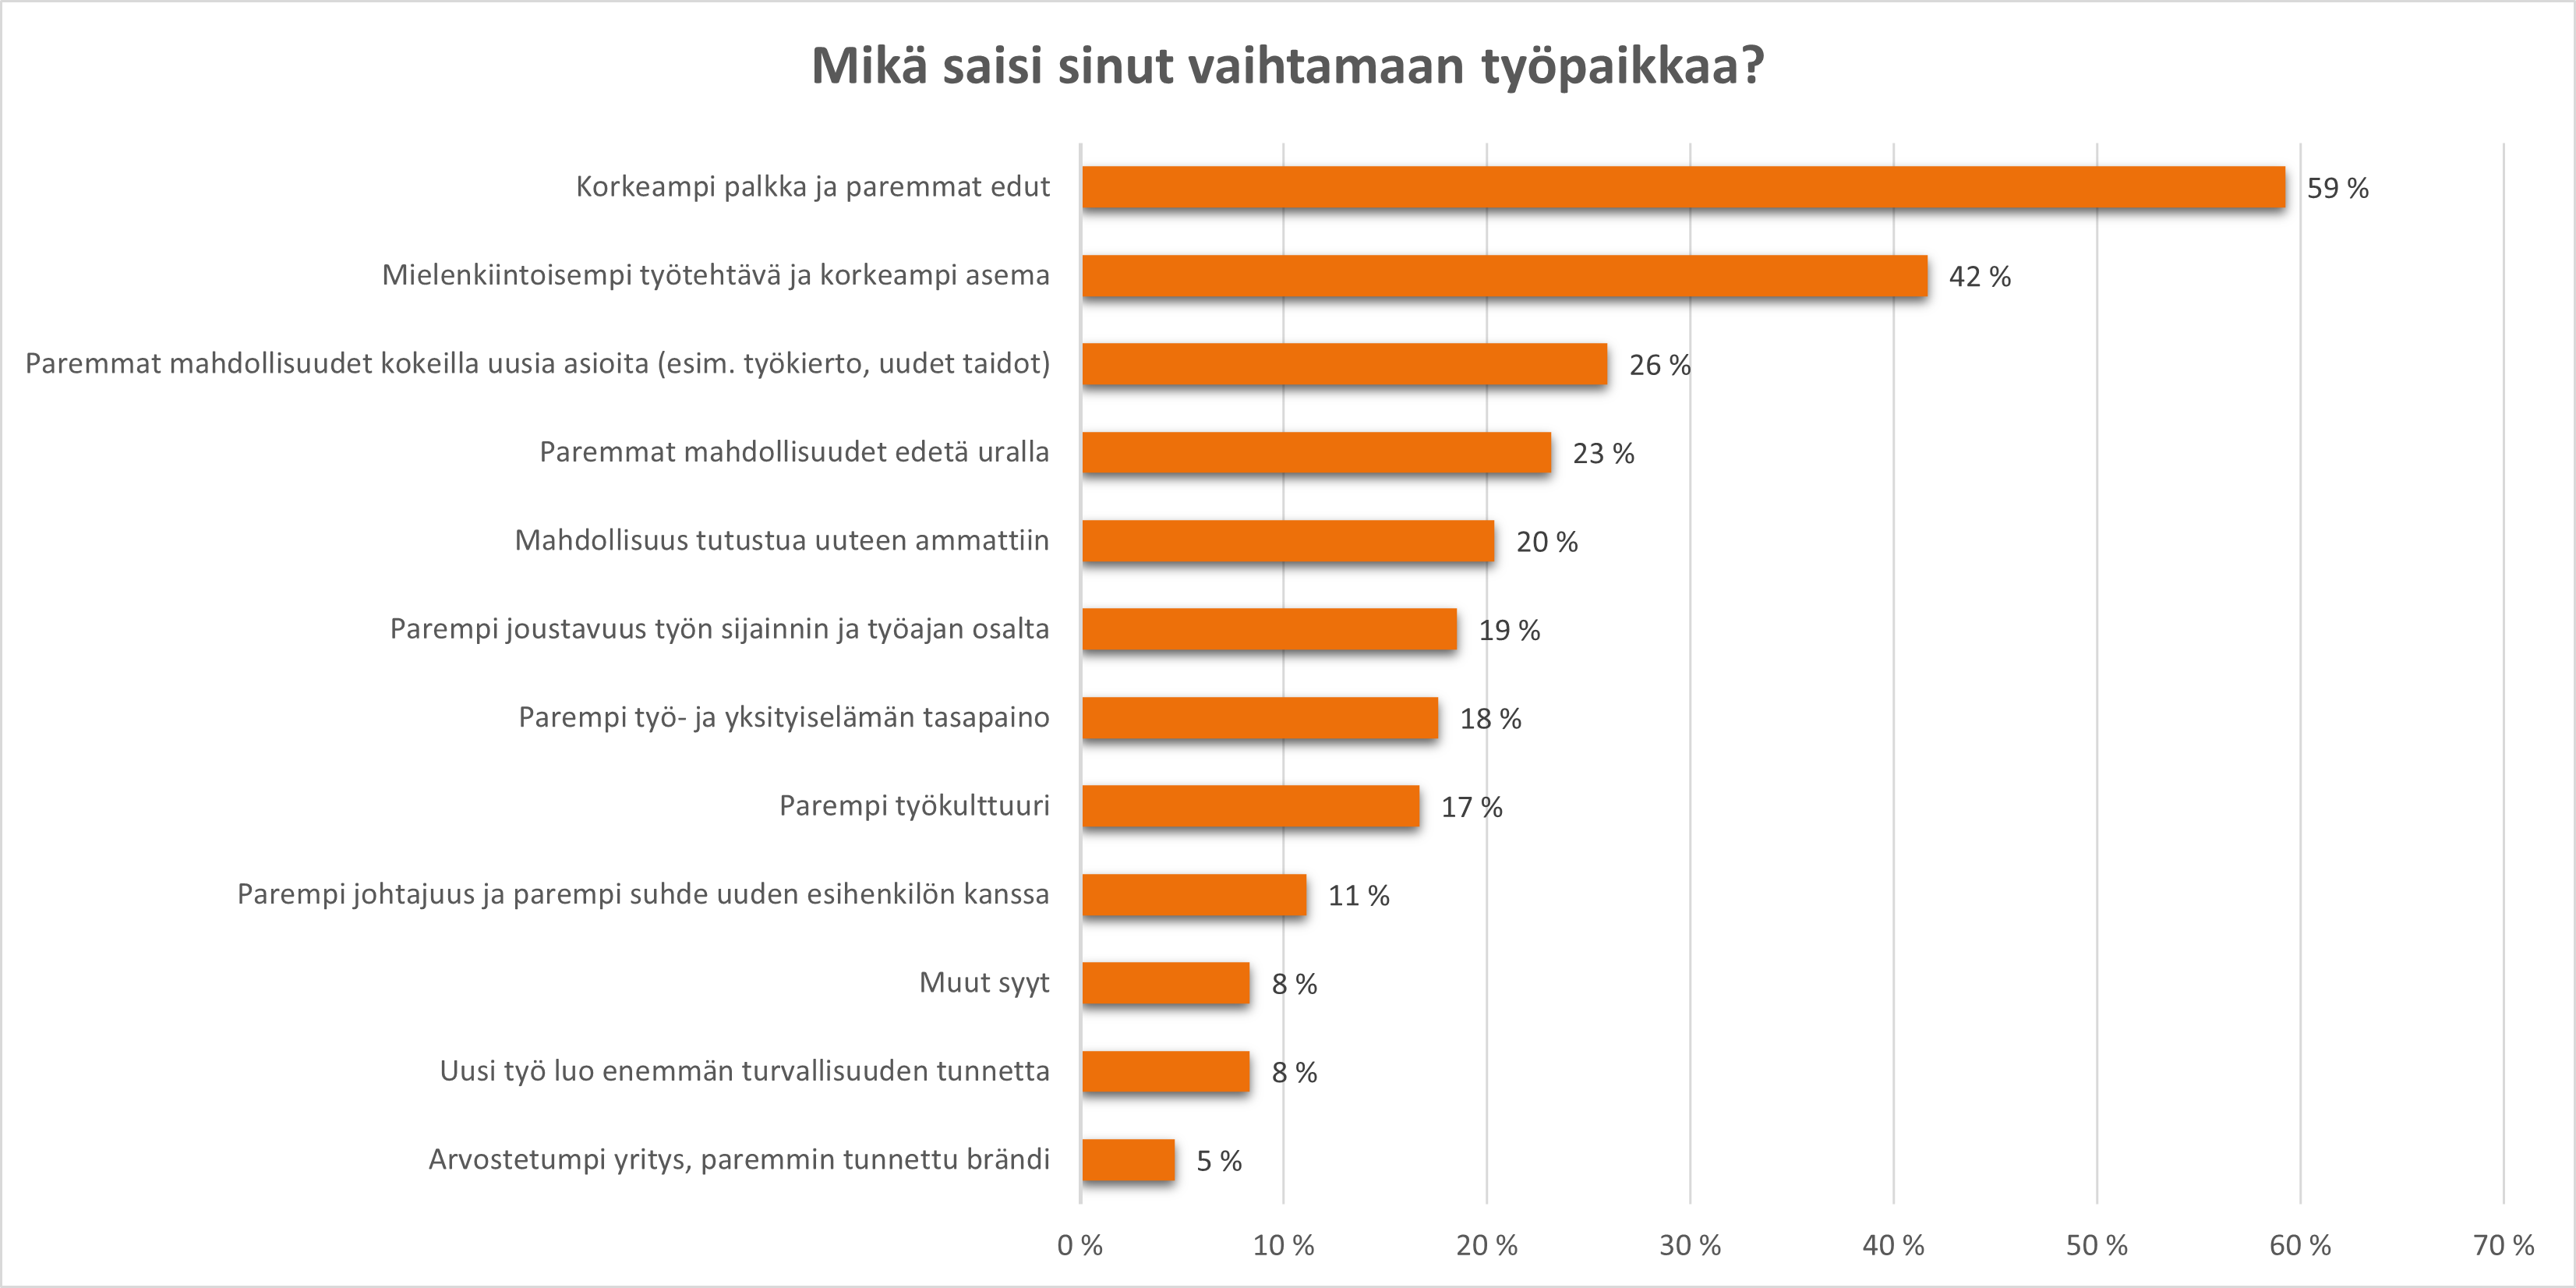 Mitä suomalaiset haluavat työltään? - Mikä saisi vaihtamaan työpaikkaa?